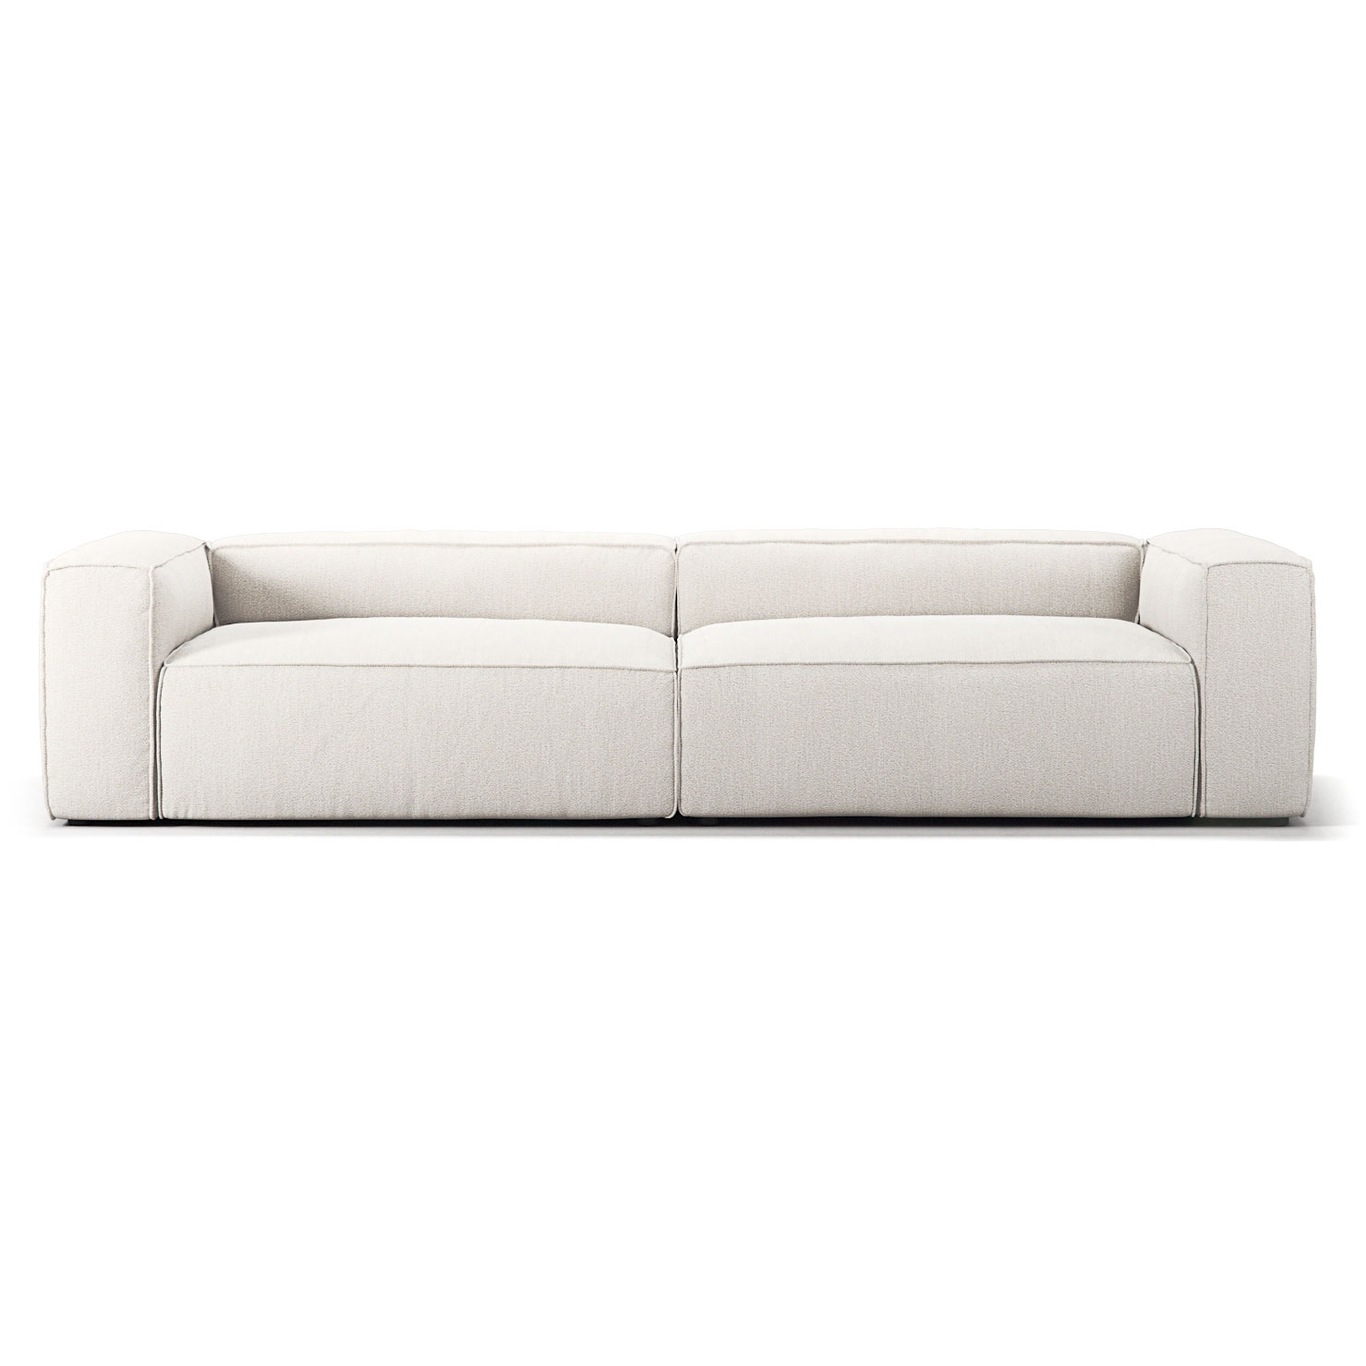 Grand 4-Seter Sofa, Steam White